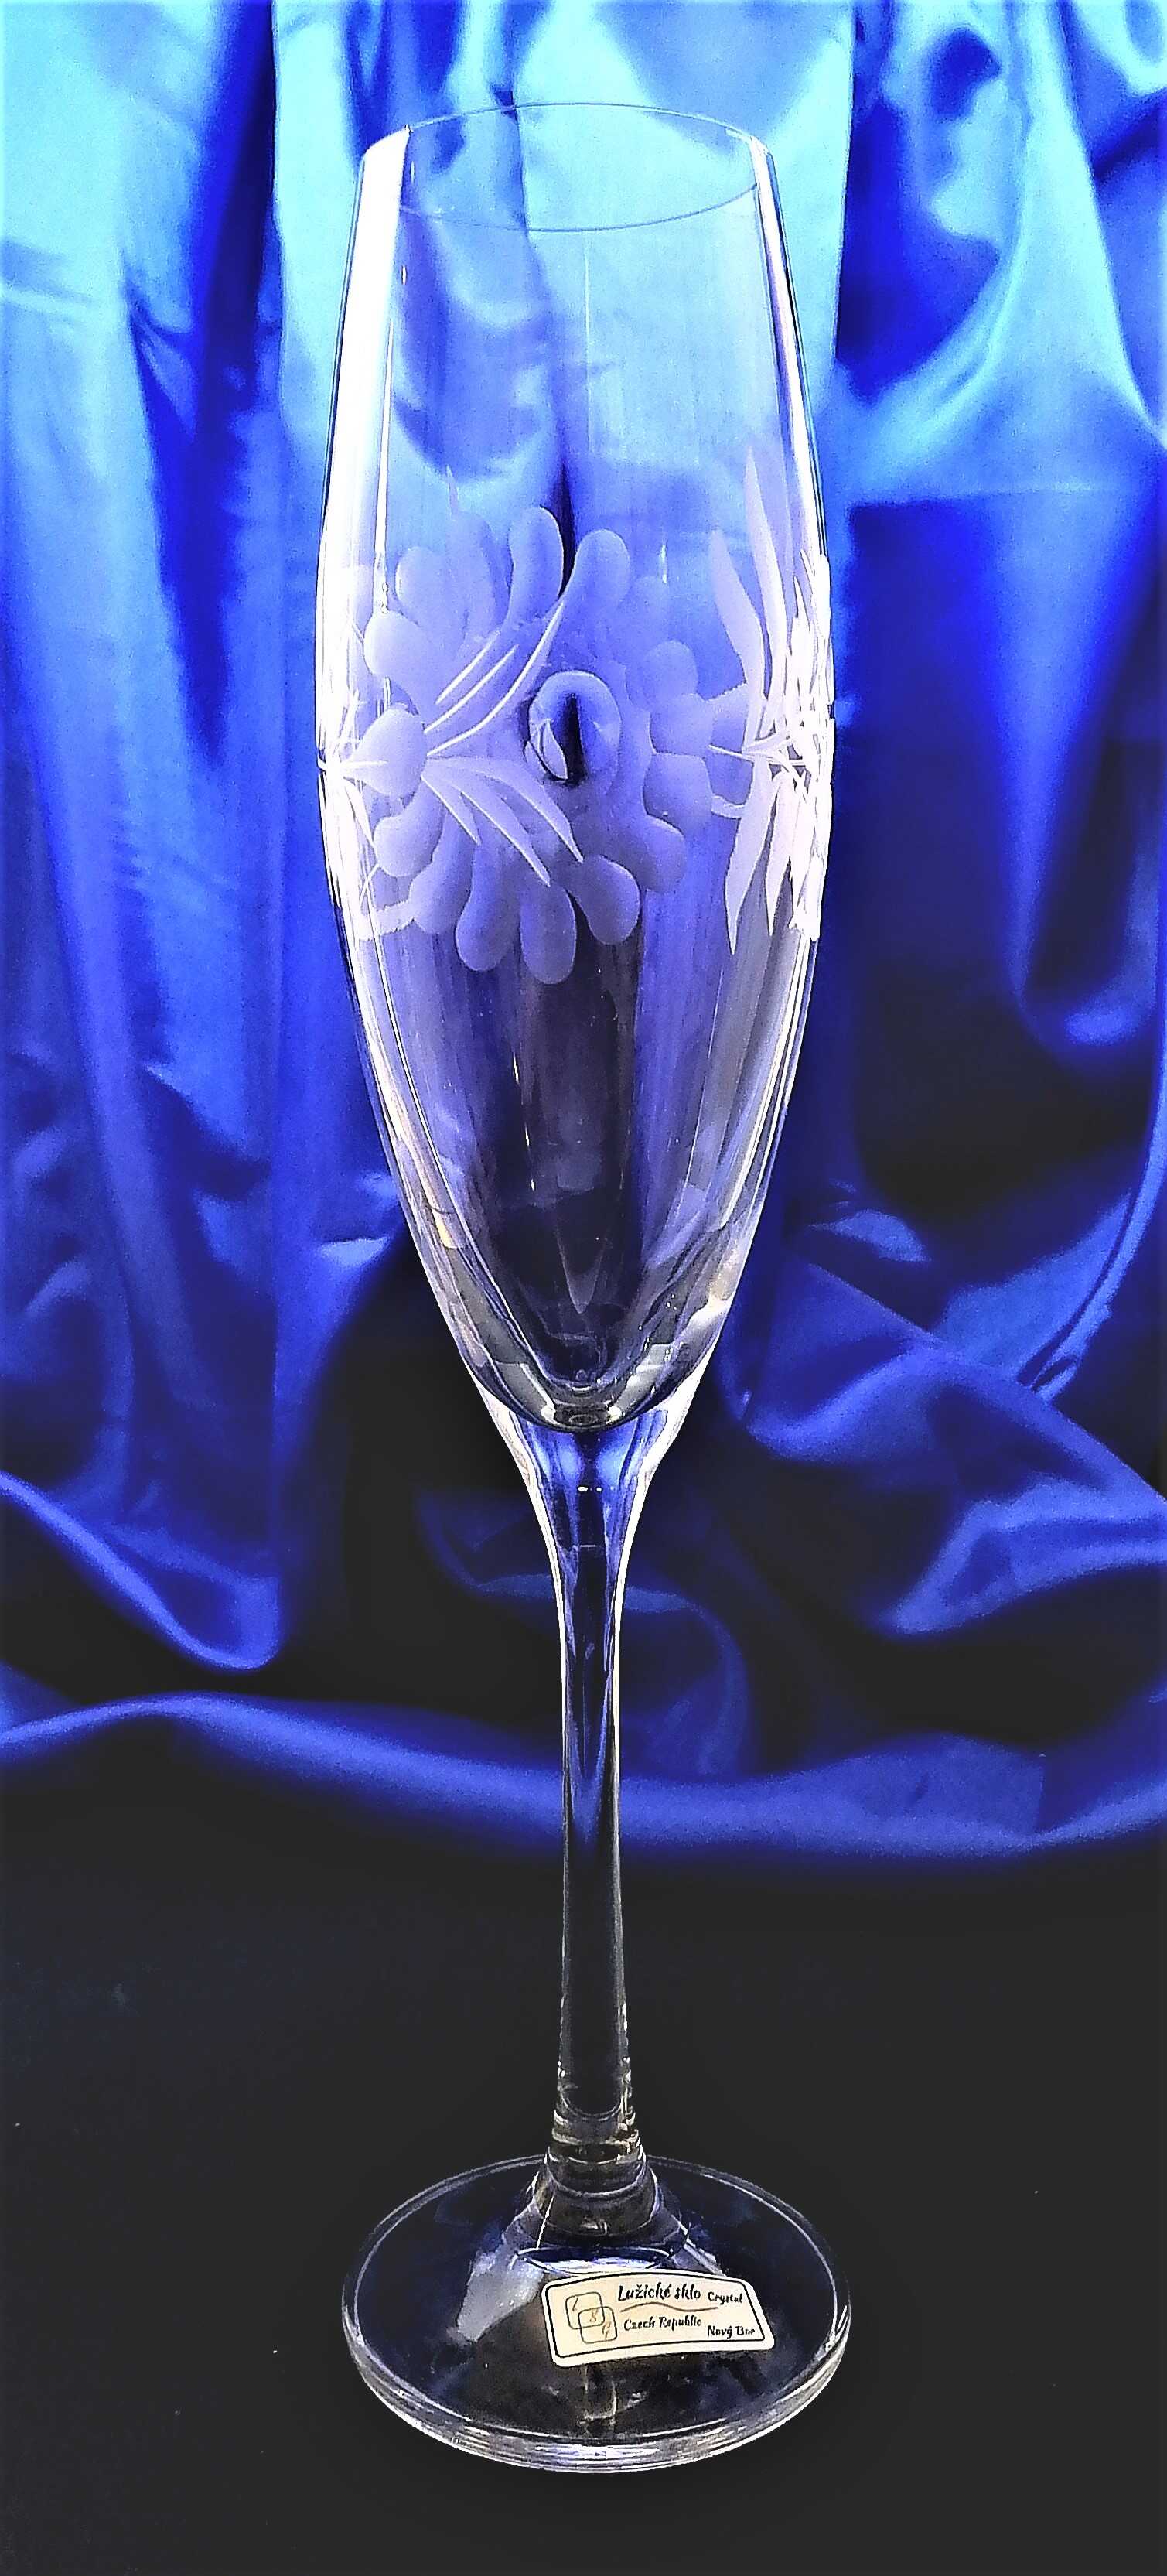 LsG-Kristall Sektkelch/Champagner Kristallgläser Hand geschliffen Alt Gravur Rose SK-119 190 ml 4 St